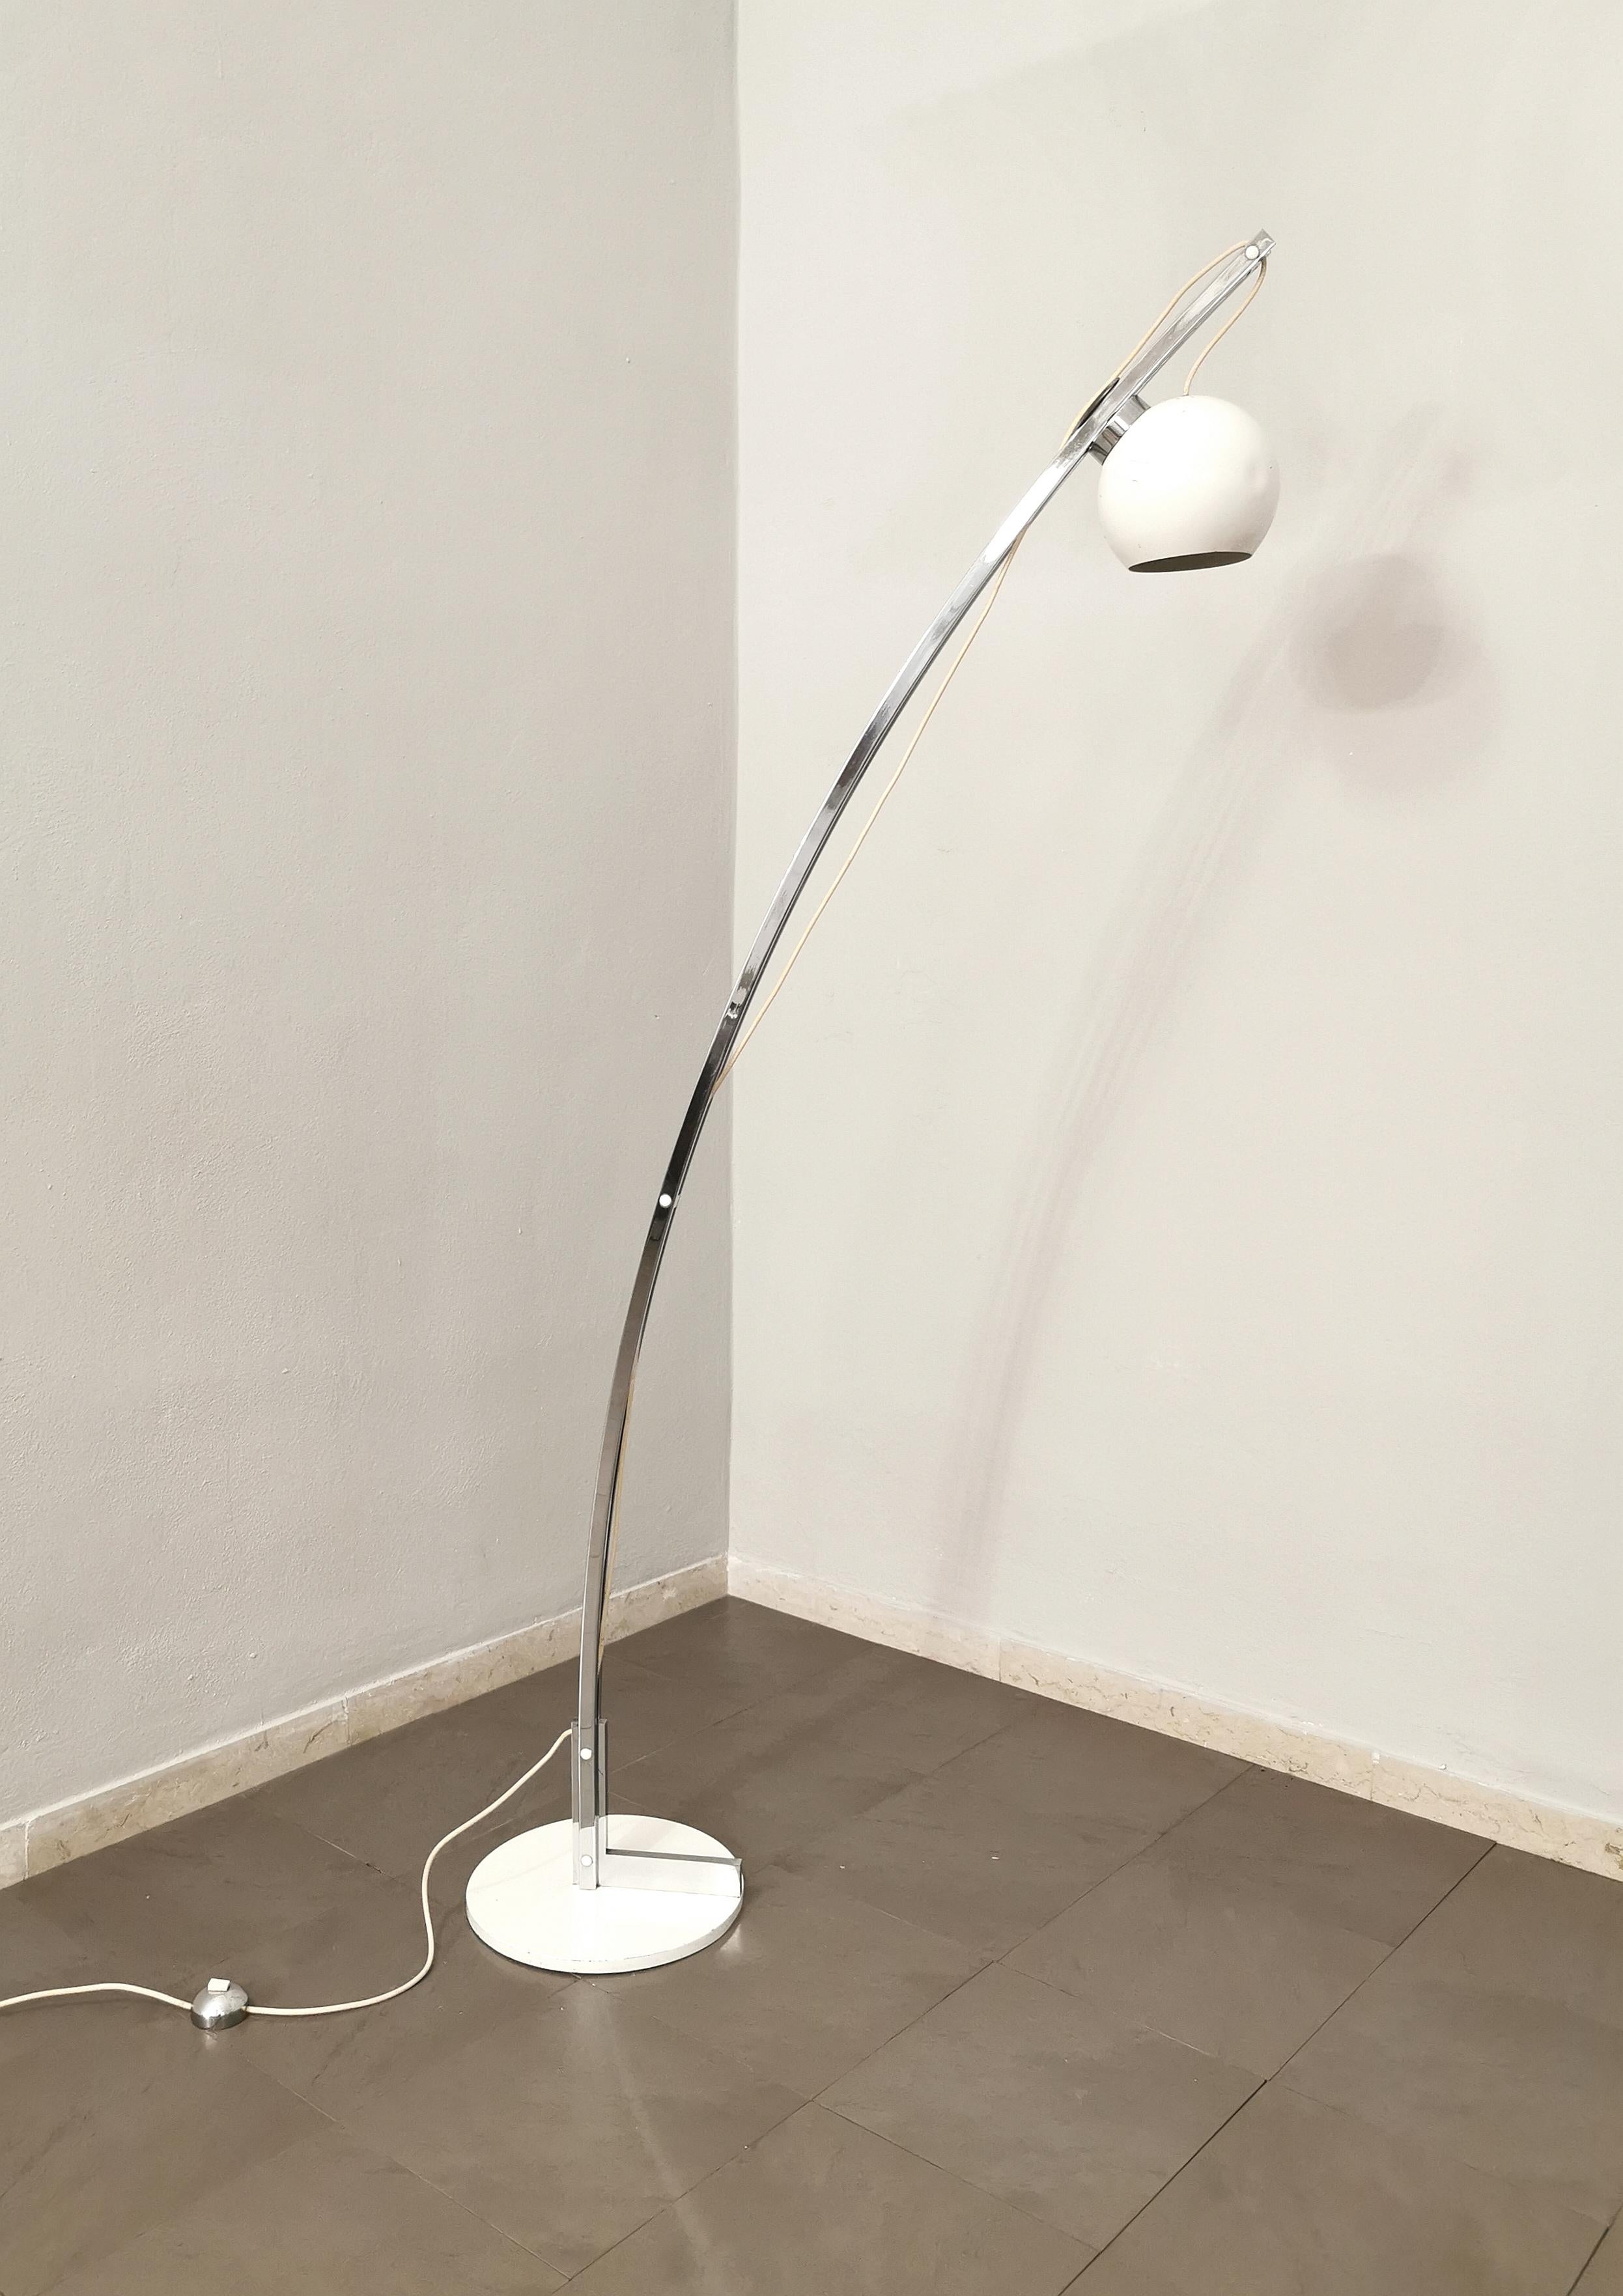 Midcentury Floor Lamp Reggiani Style Chromed Enameled Metal Italian Design 1970s For Sale 5